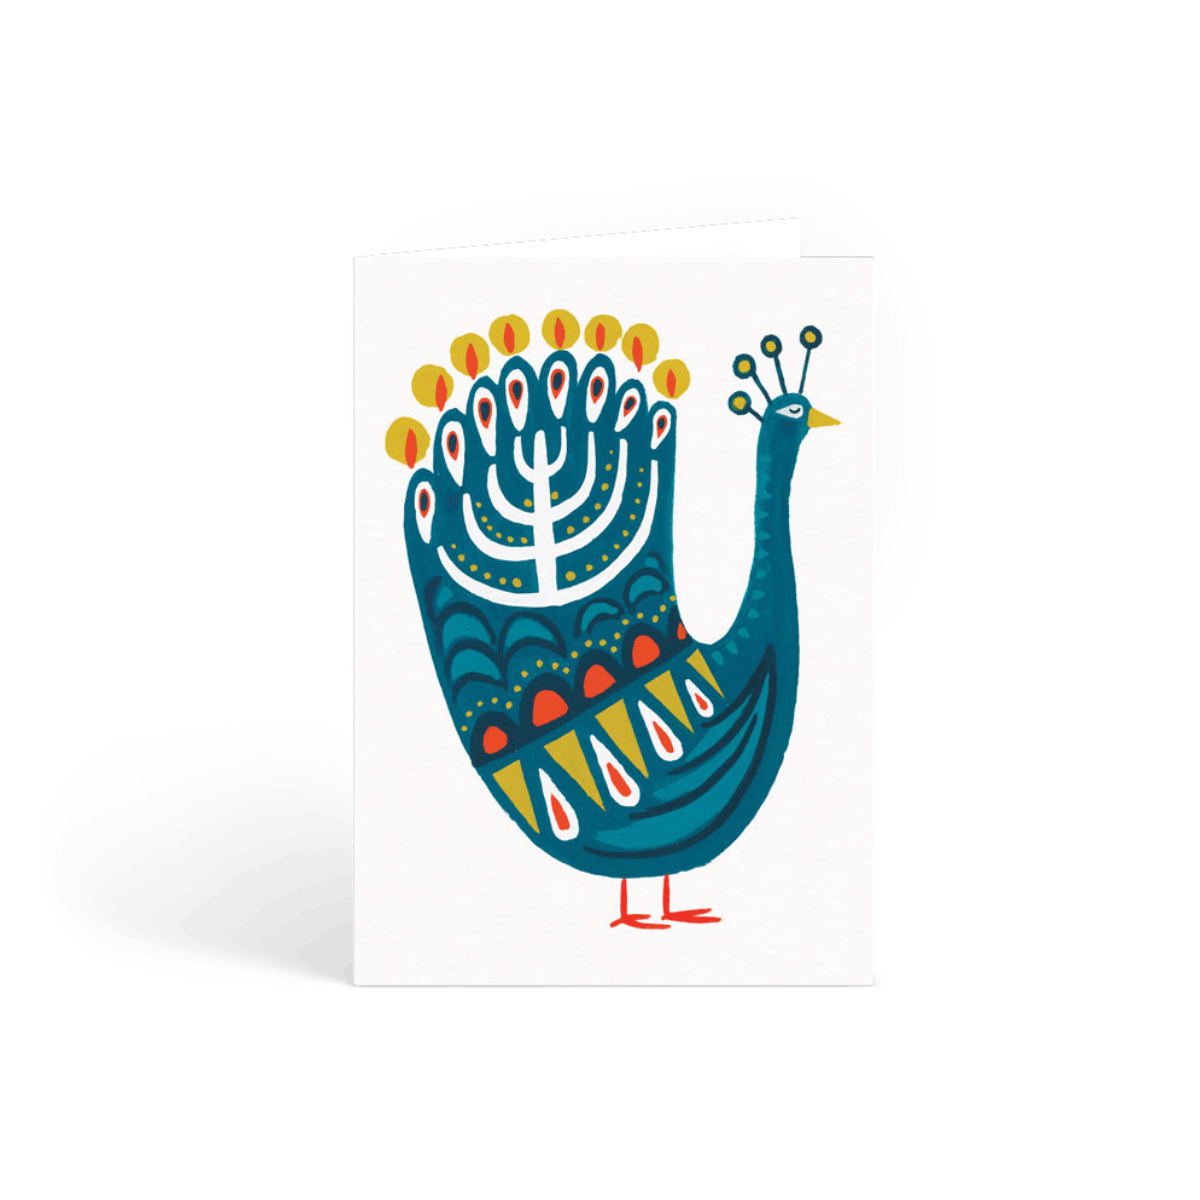 Hanukkah Peacock